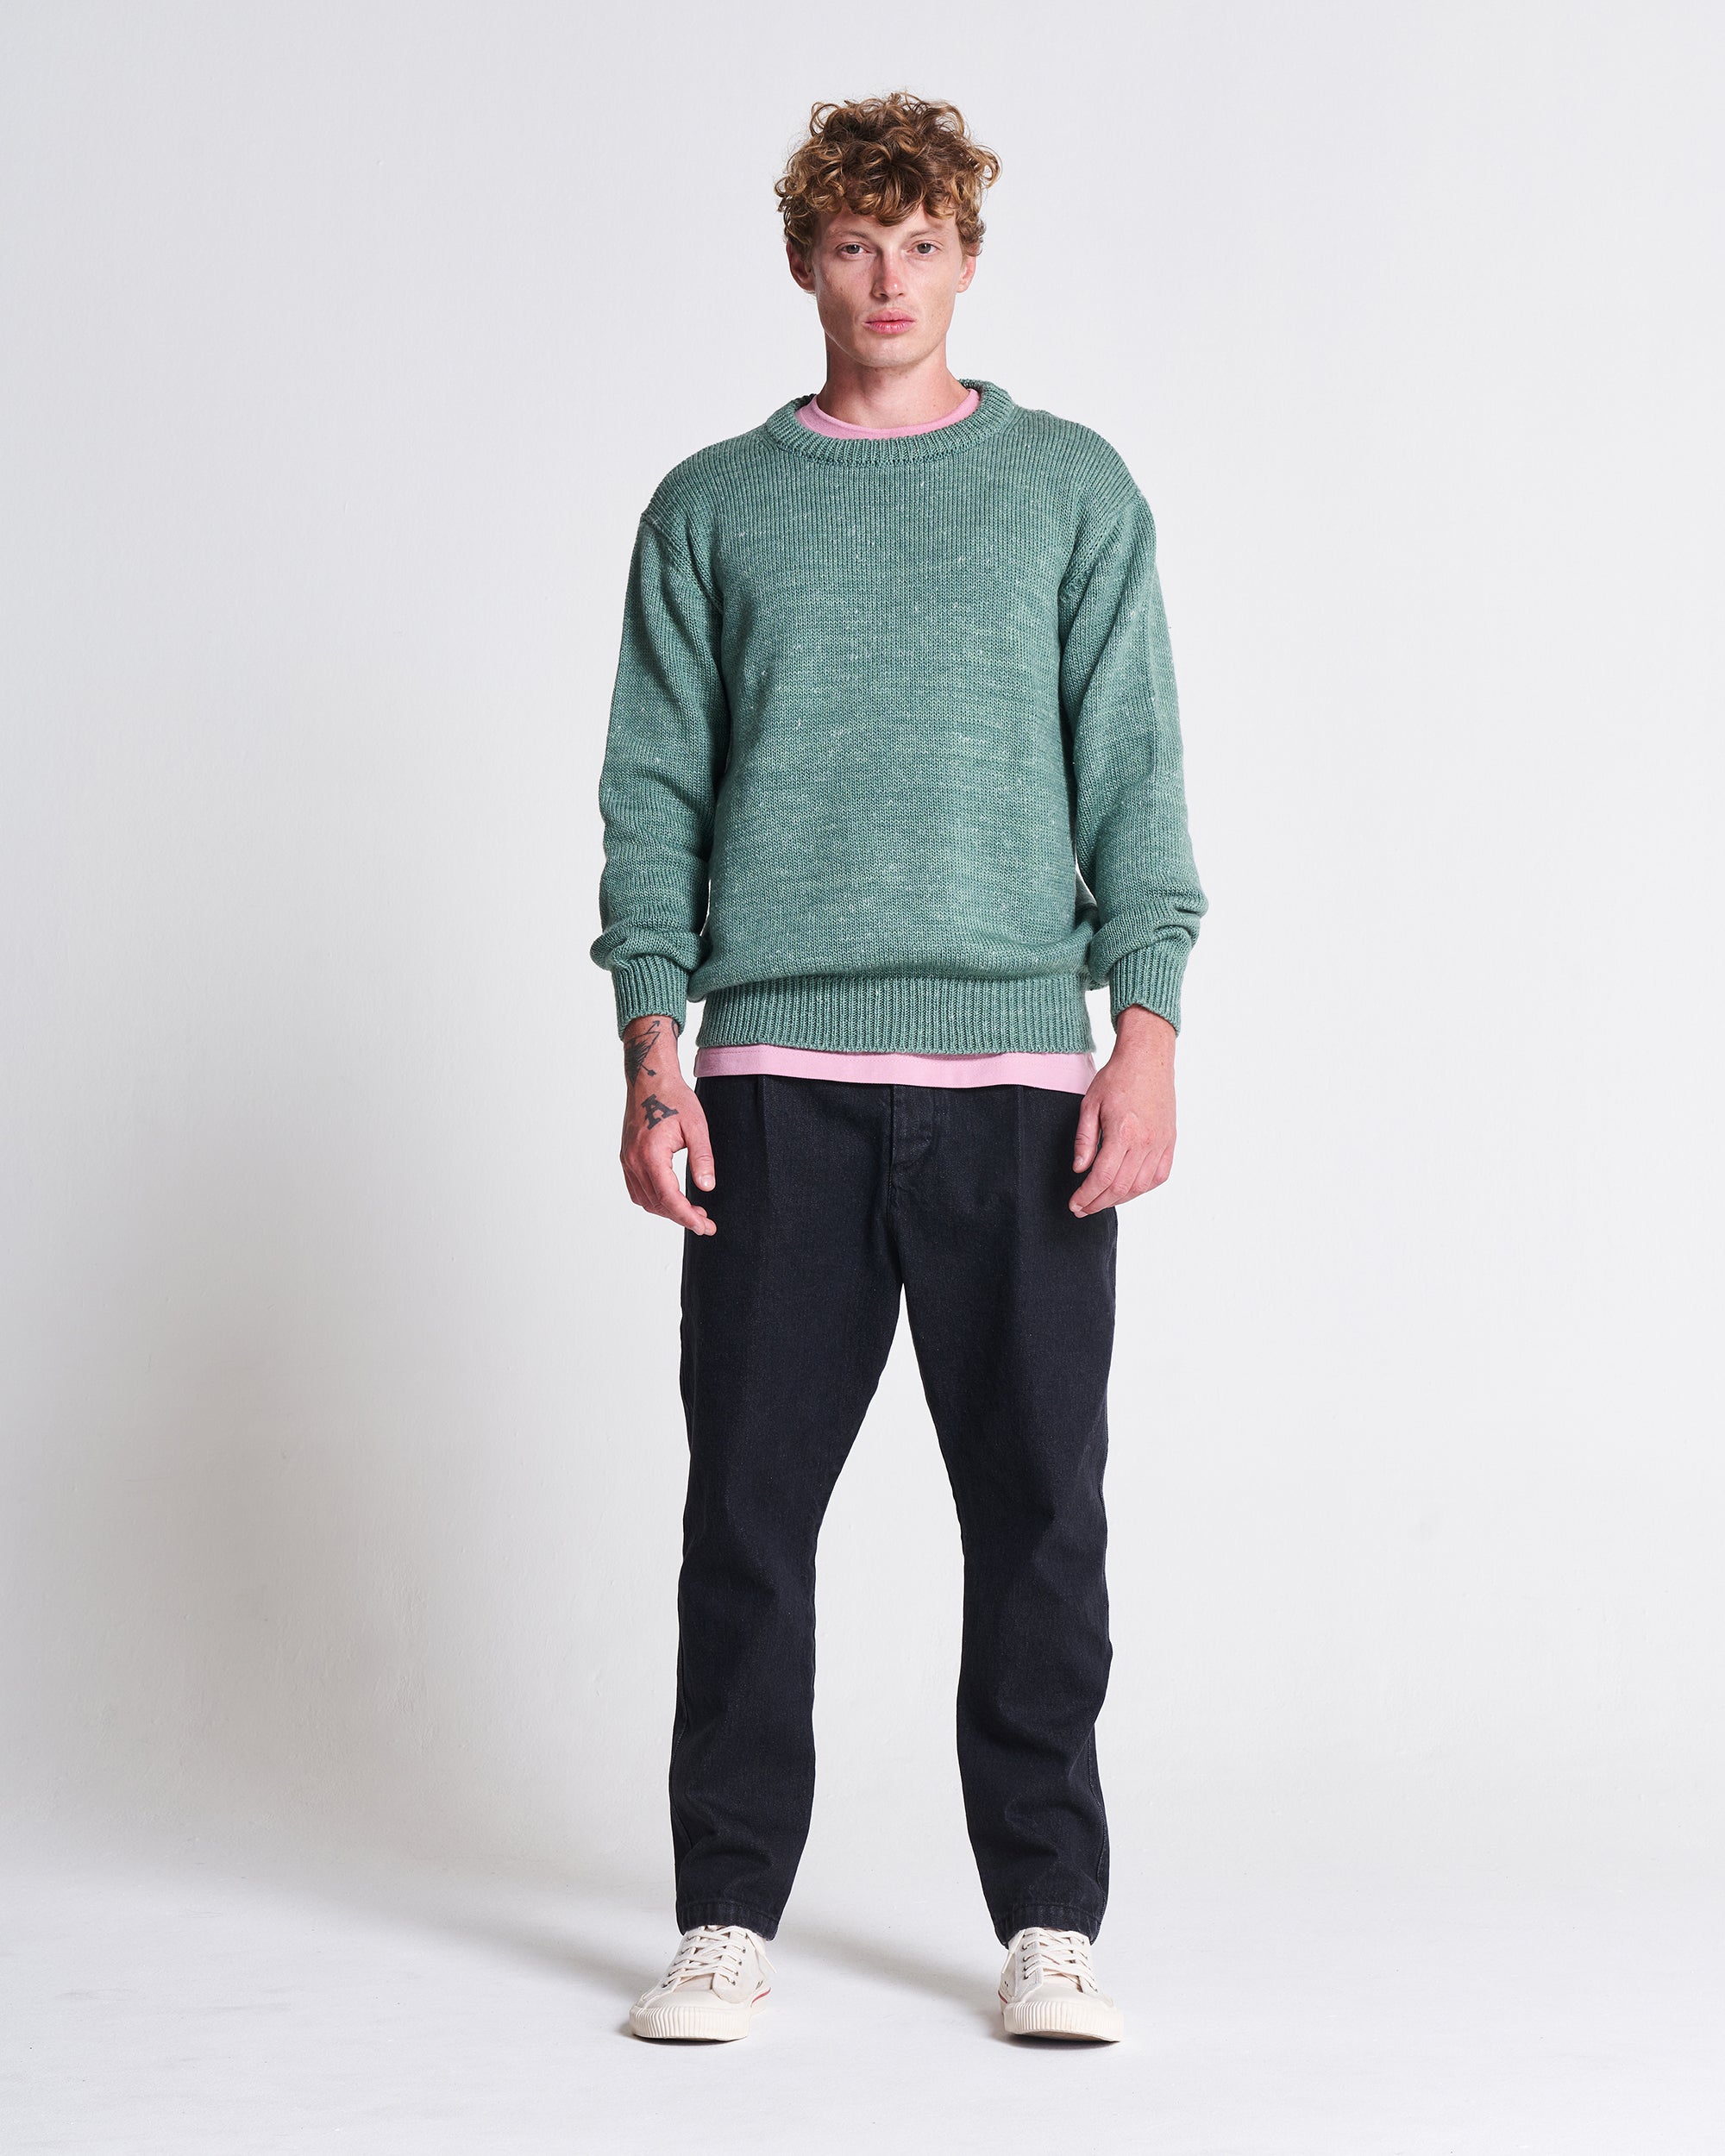 The 1kg Wool & Linen Sweater in Myrtle Green